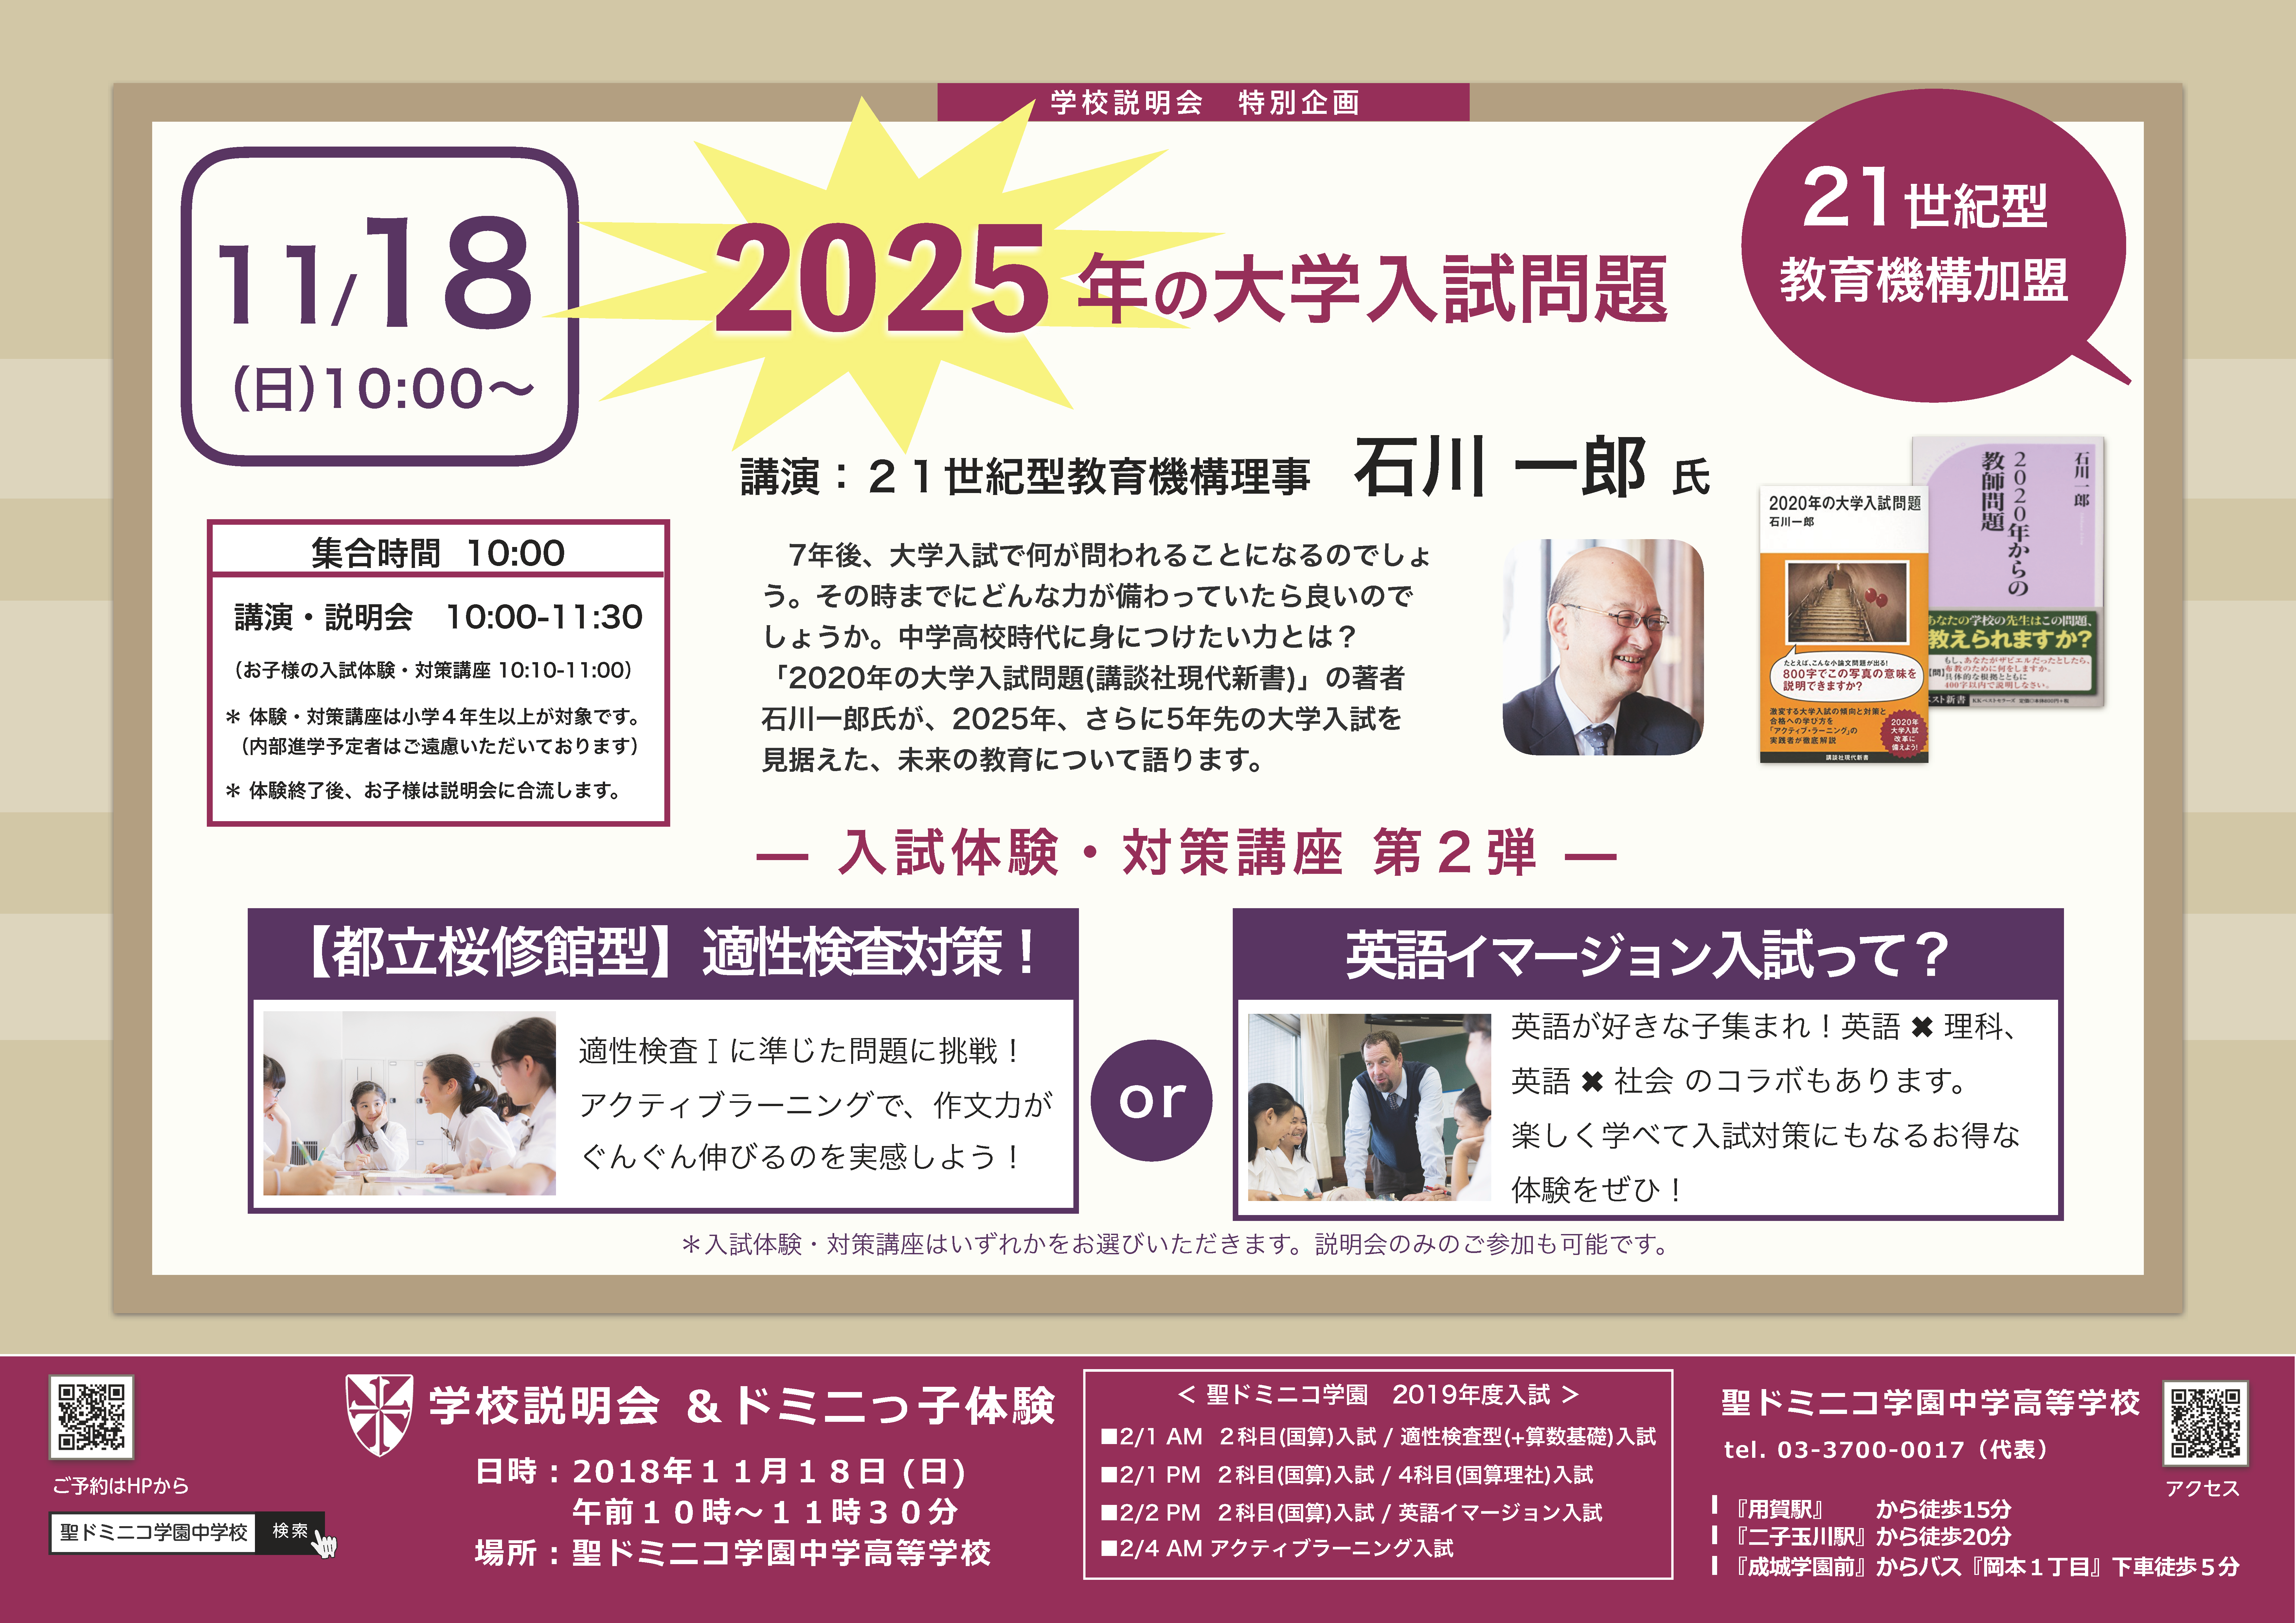 11/18『2025年の大学入試問題』石川一郎先生 講演